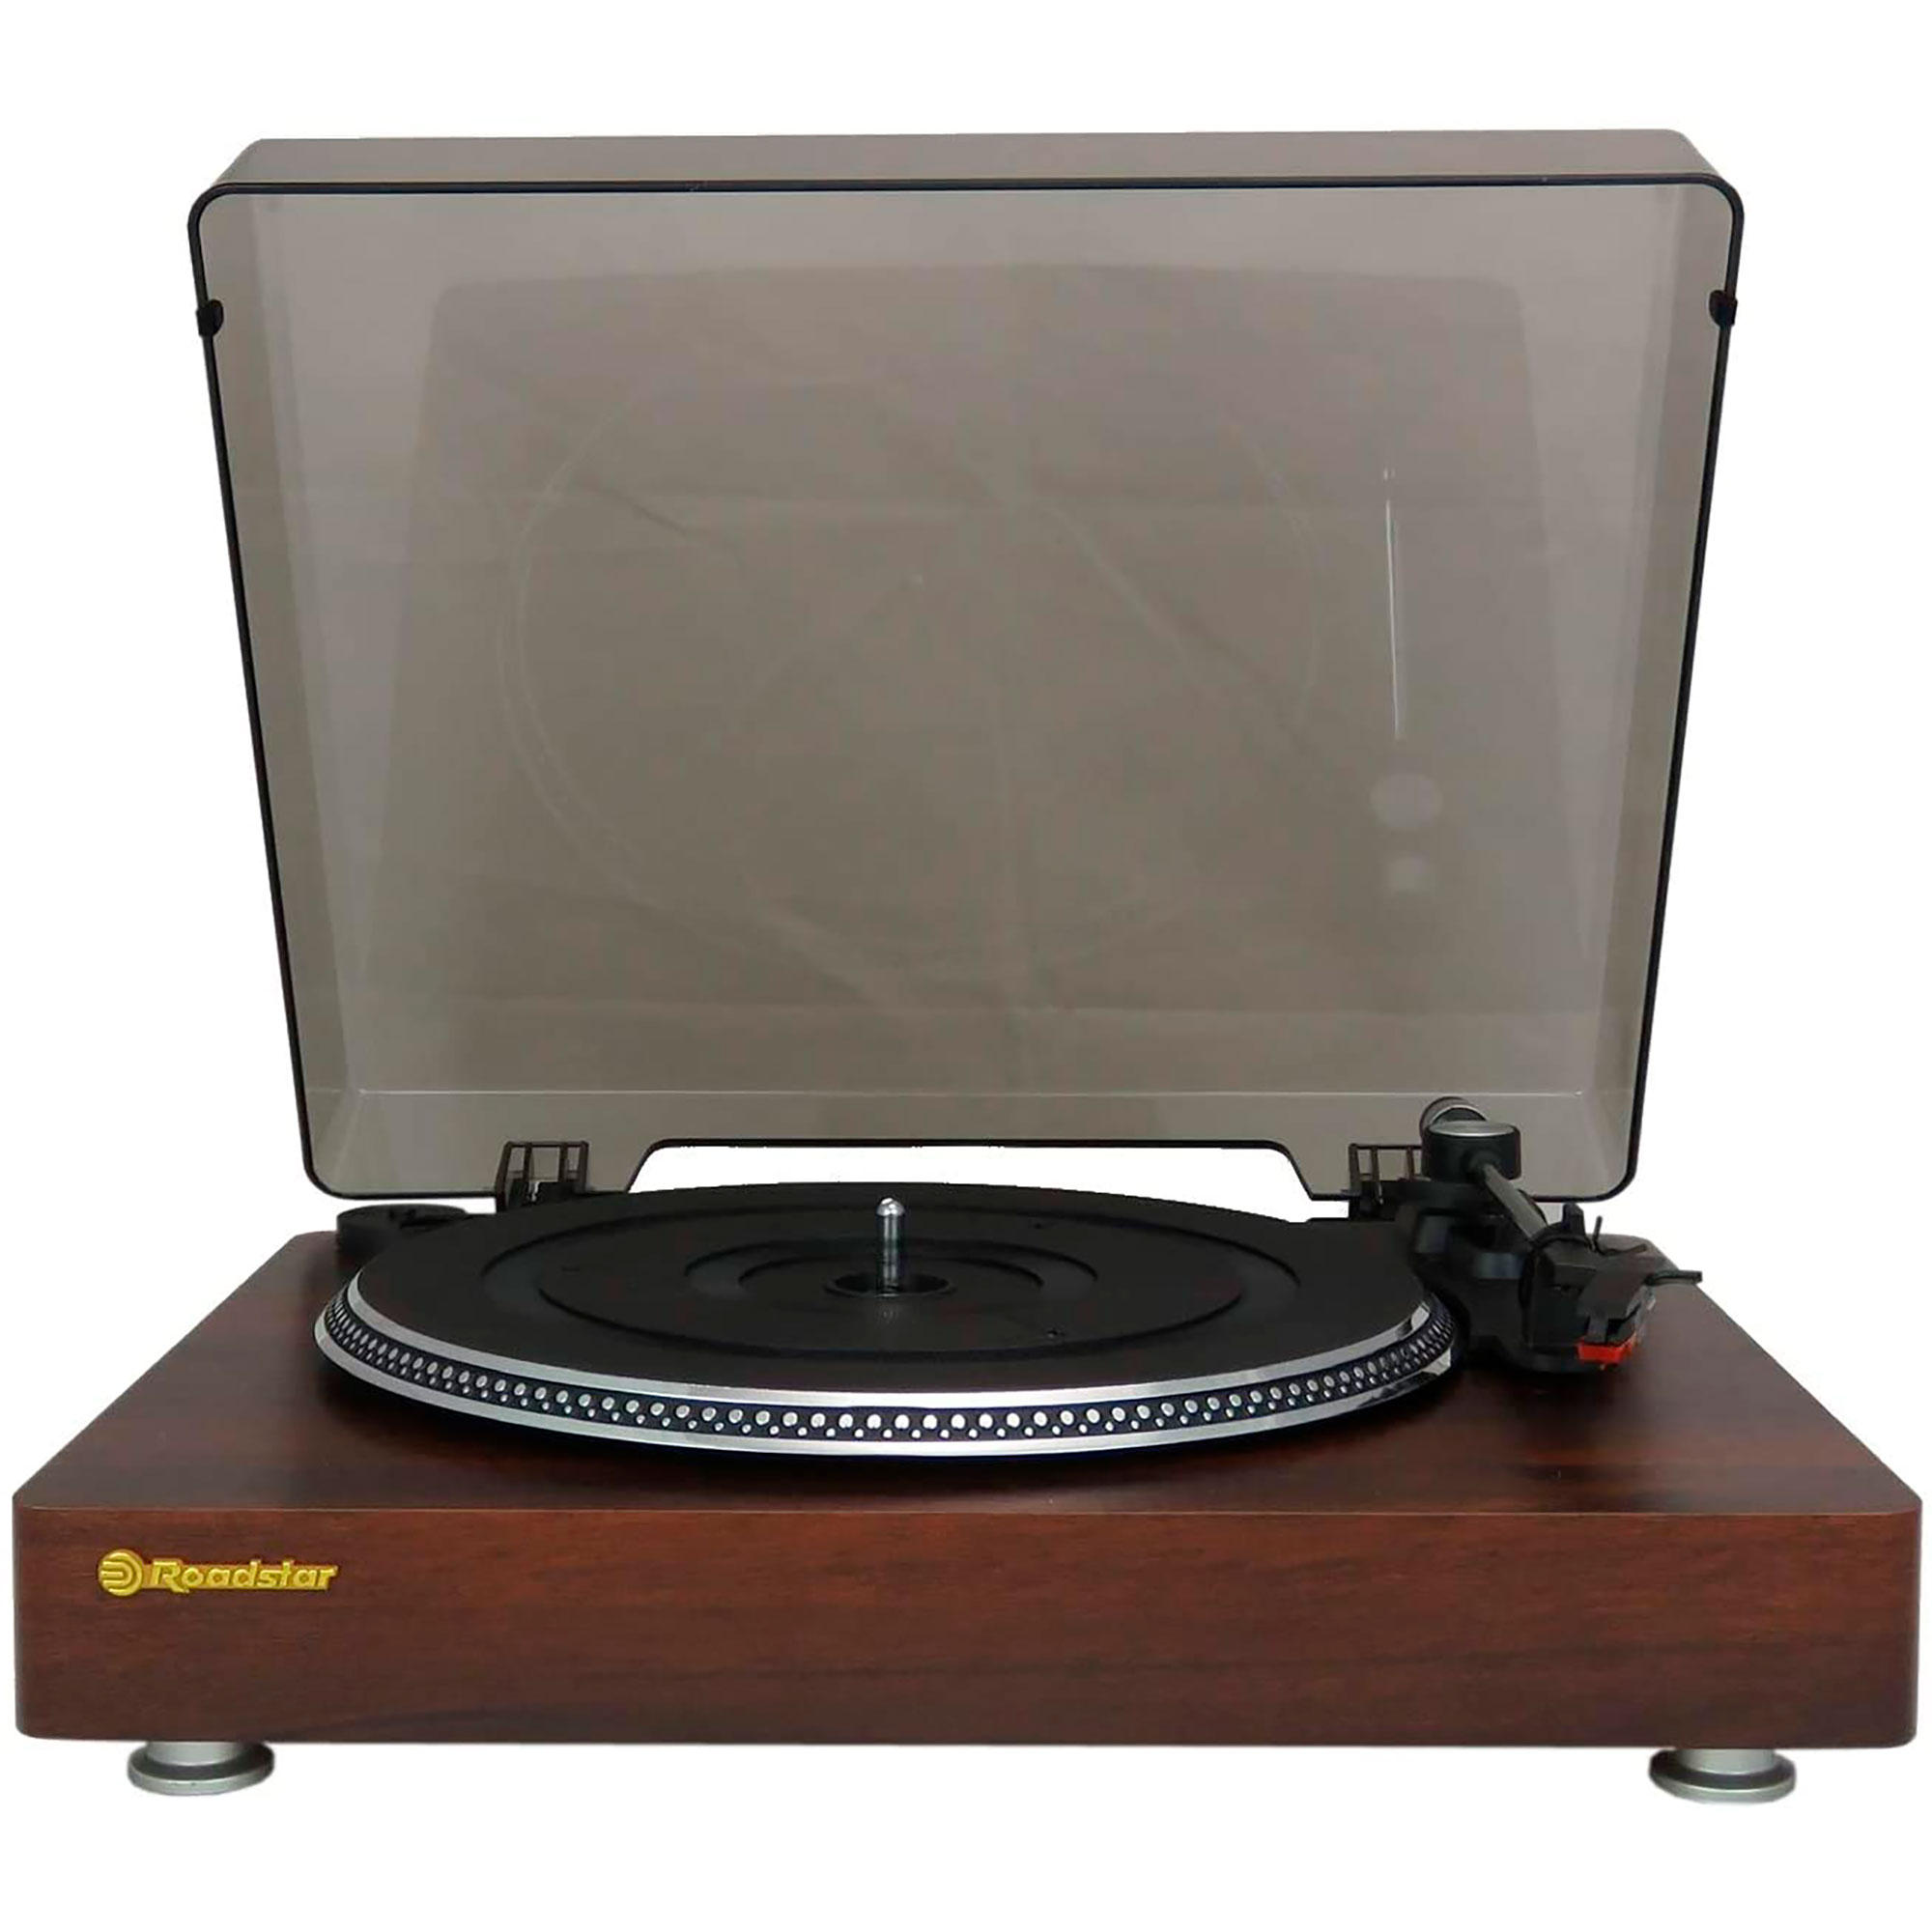 ROADSTAR TT385BTT Holz Vintage Retro Vinyl-Plattenspieler